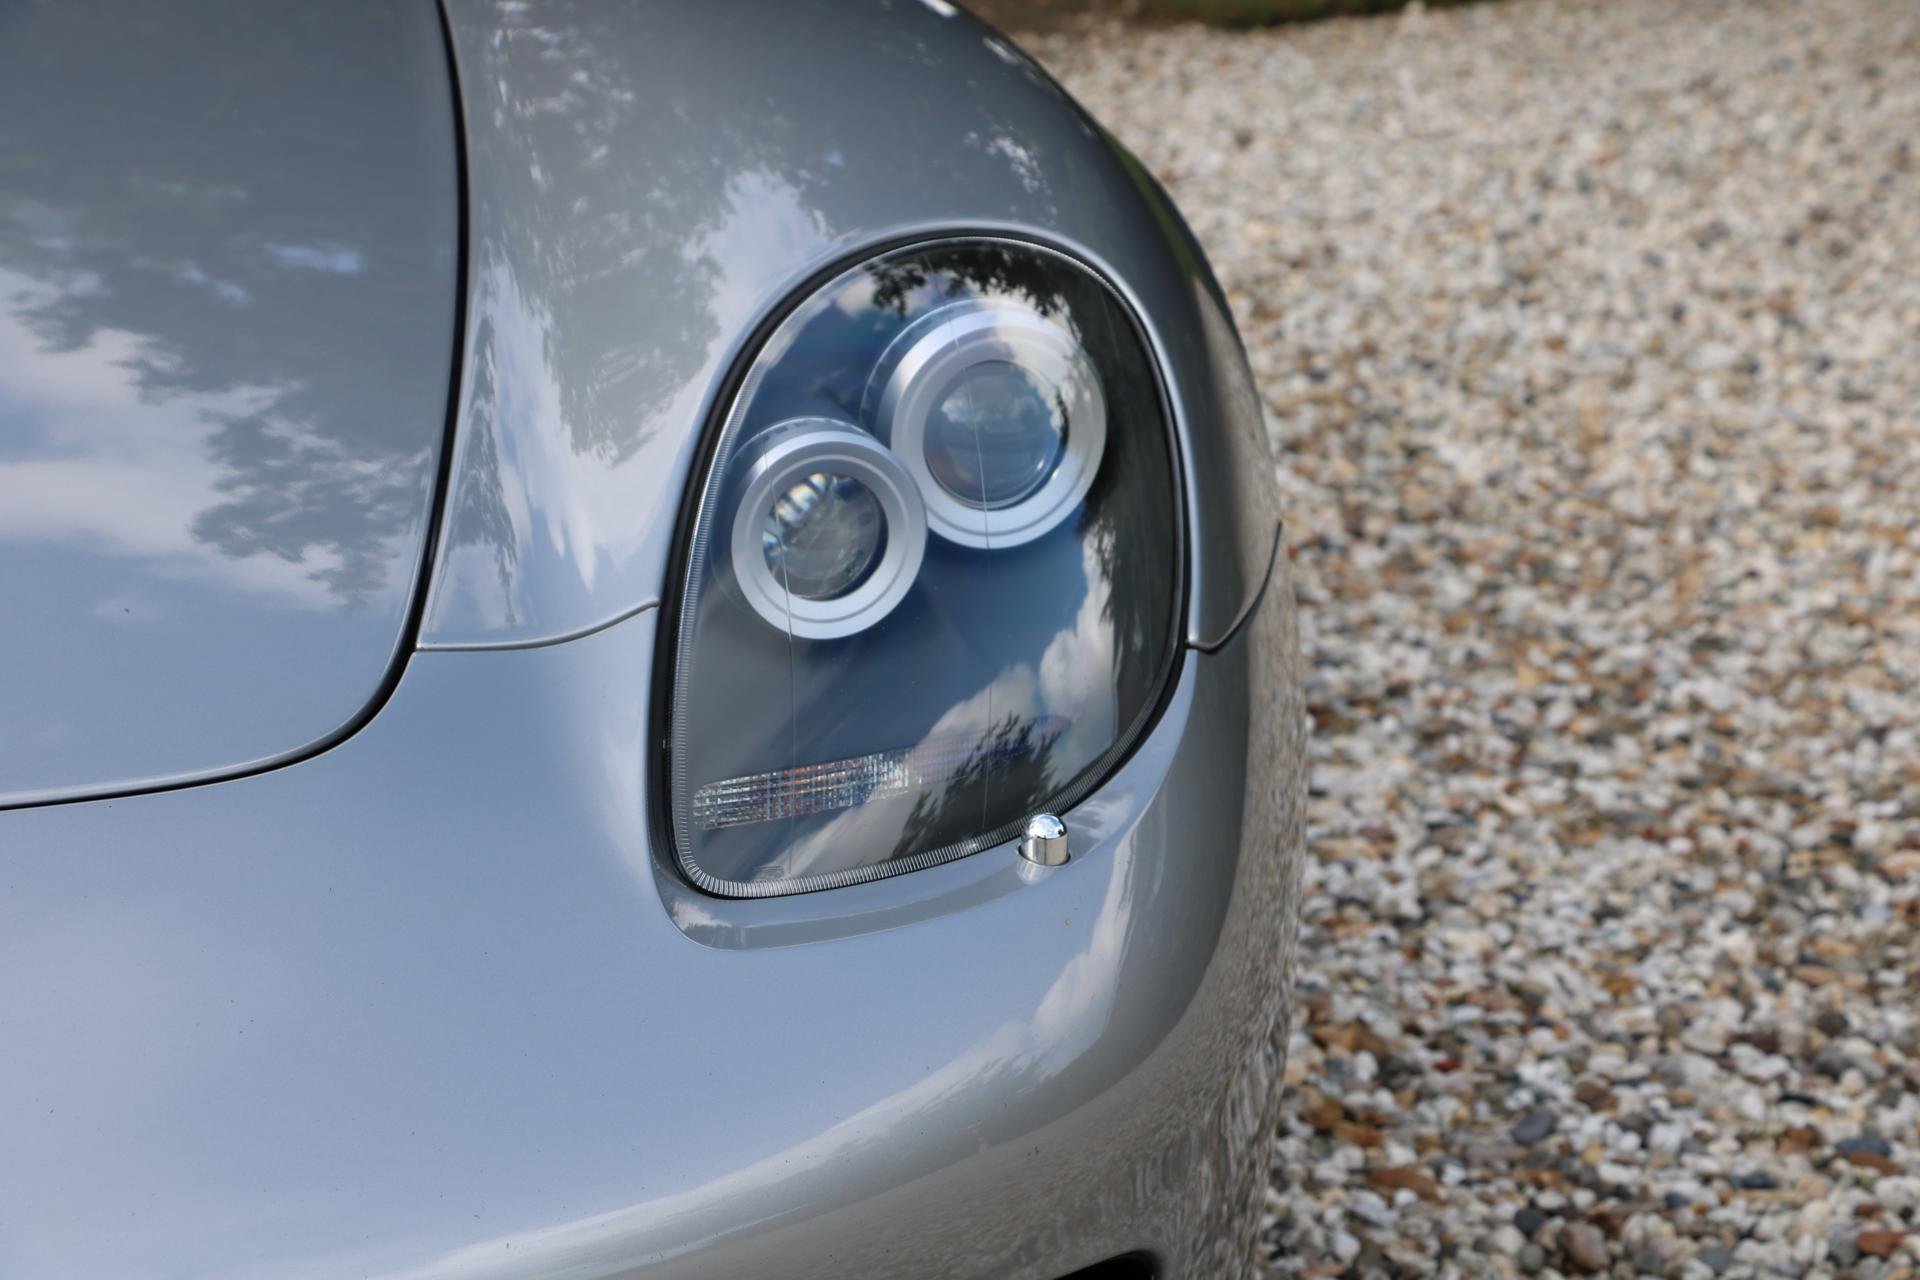 Real Art on Wheels | Porsche Carrera GT